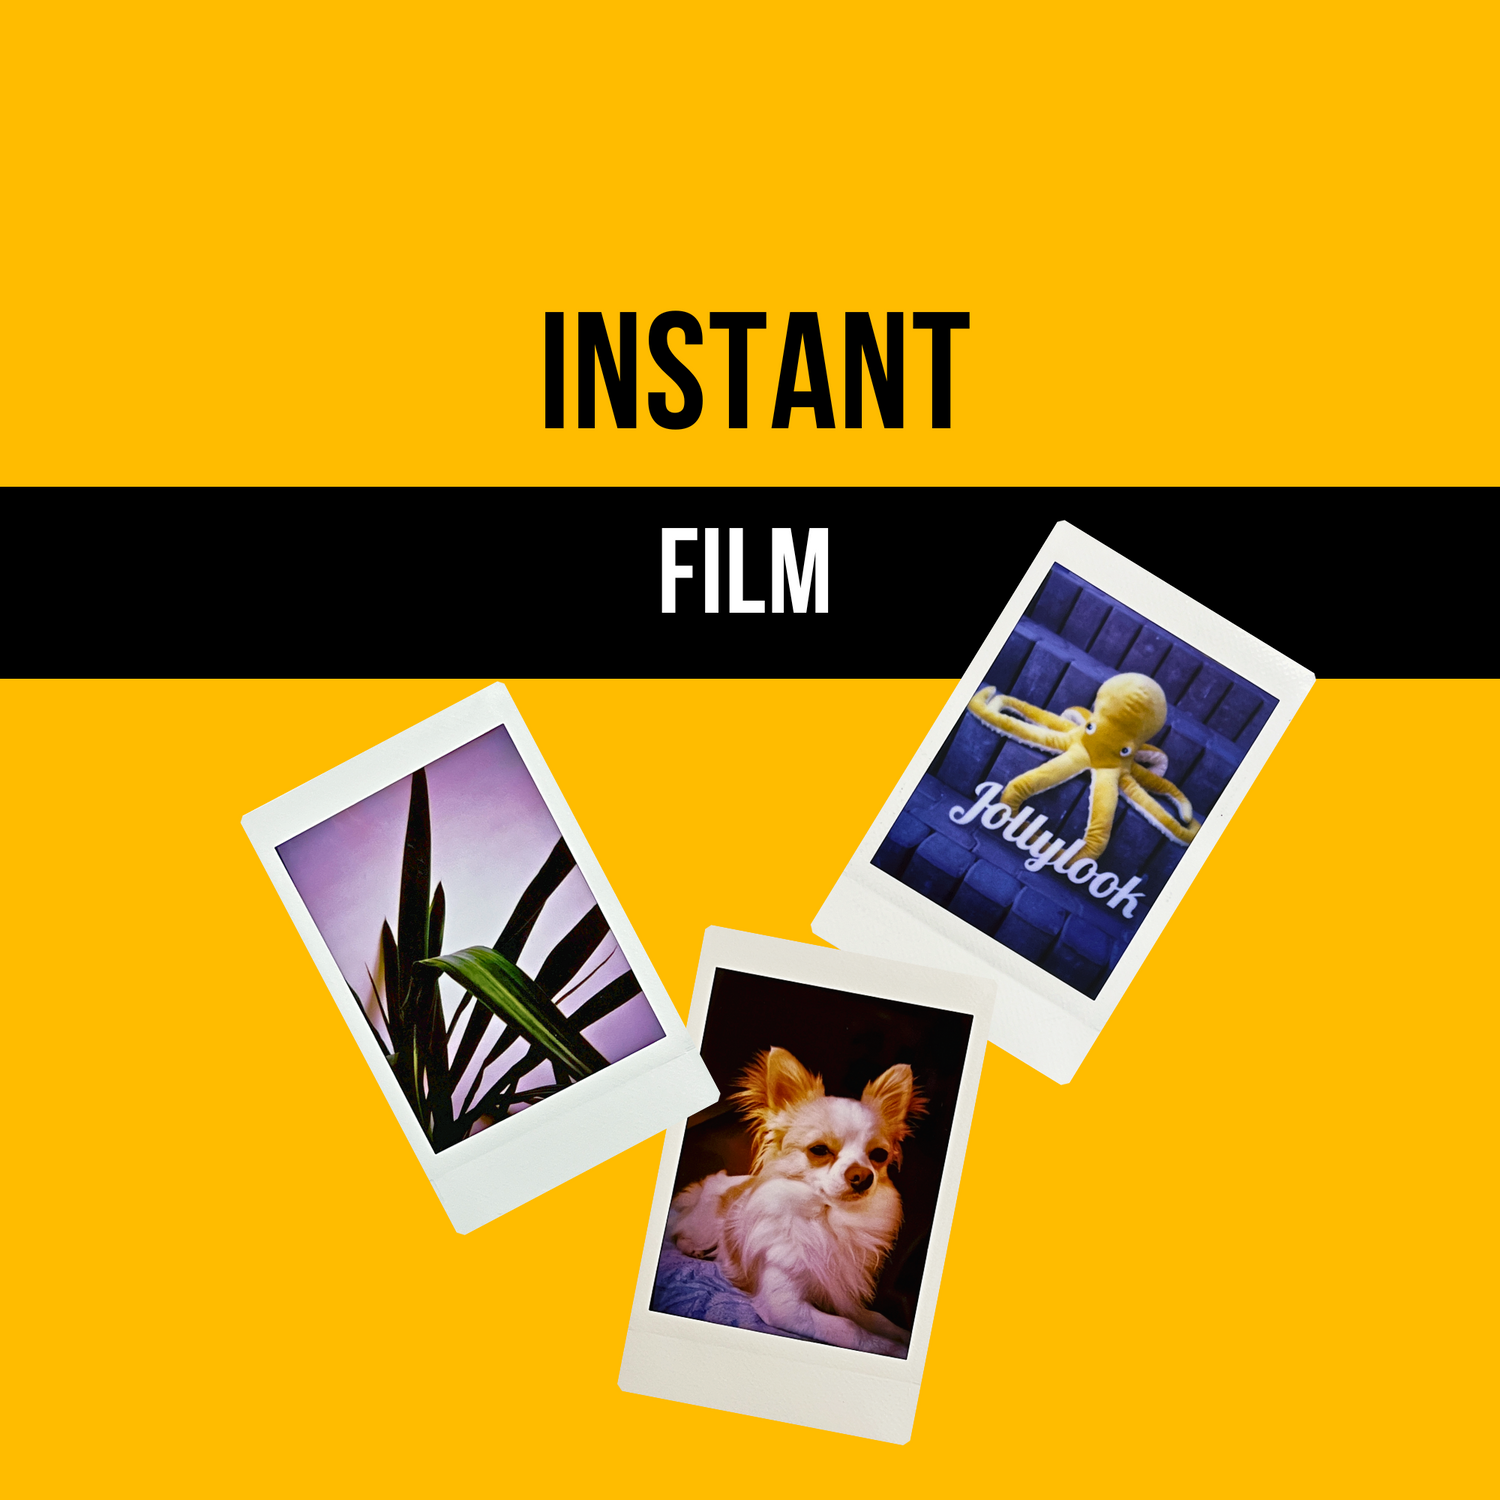 INSTANT FILM